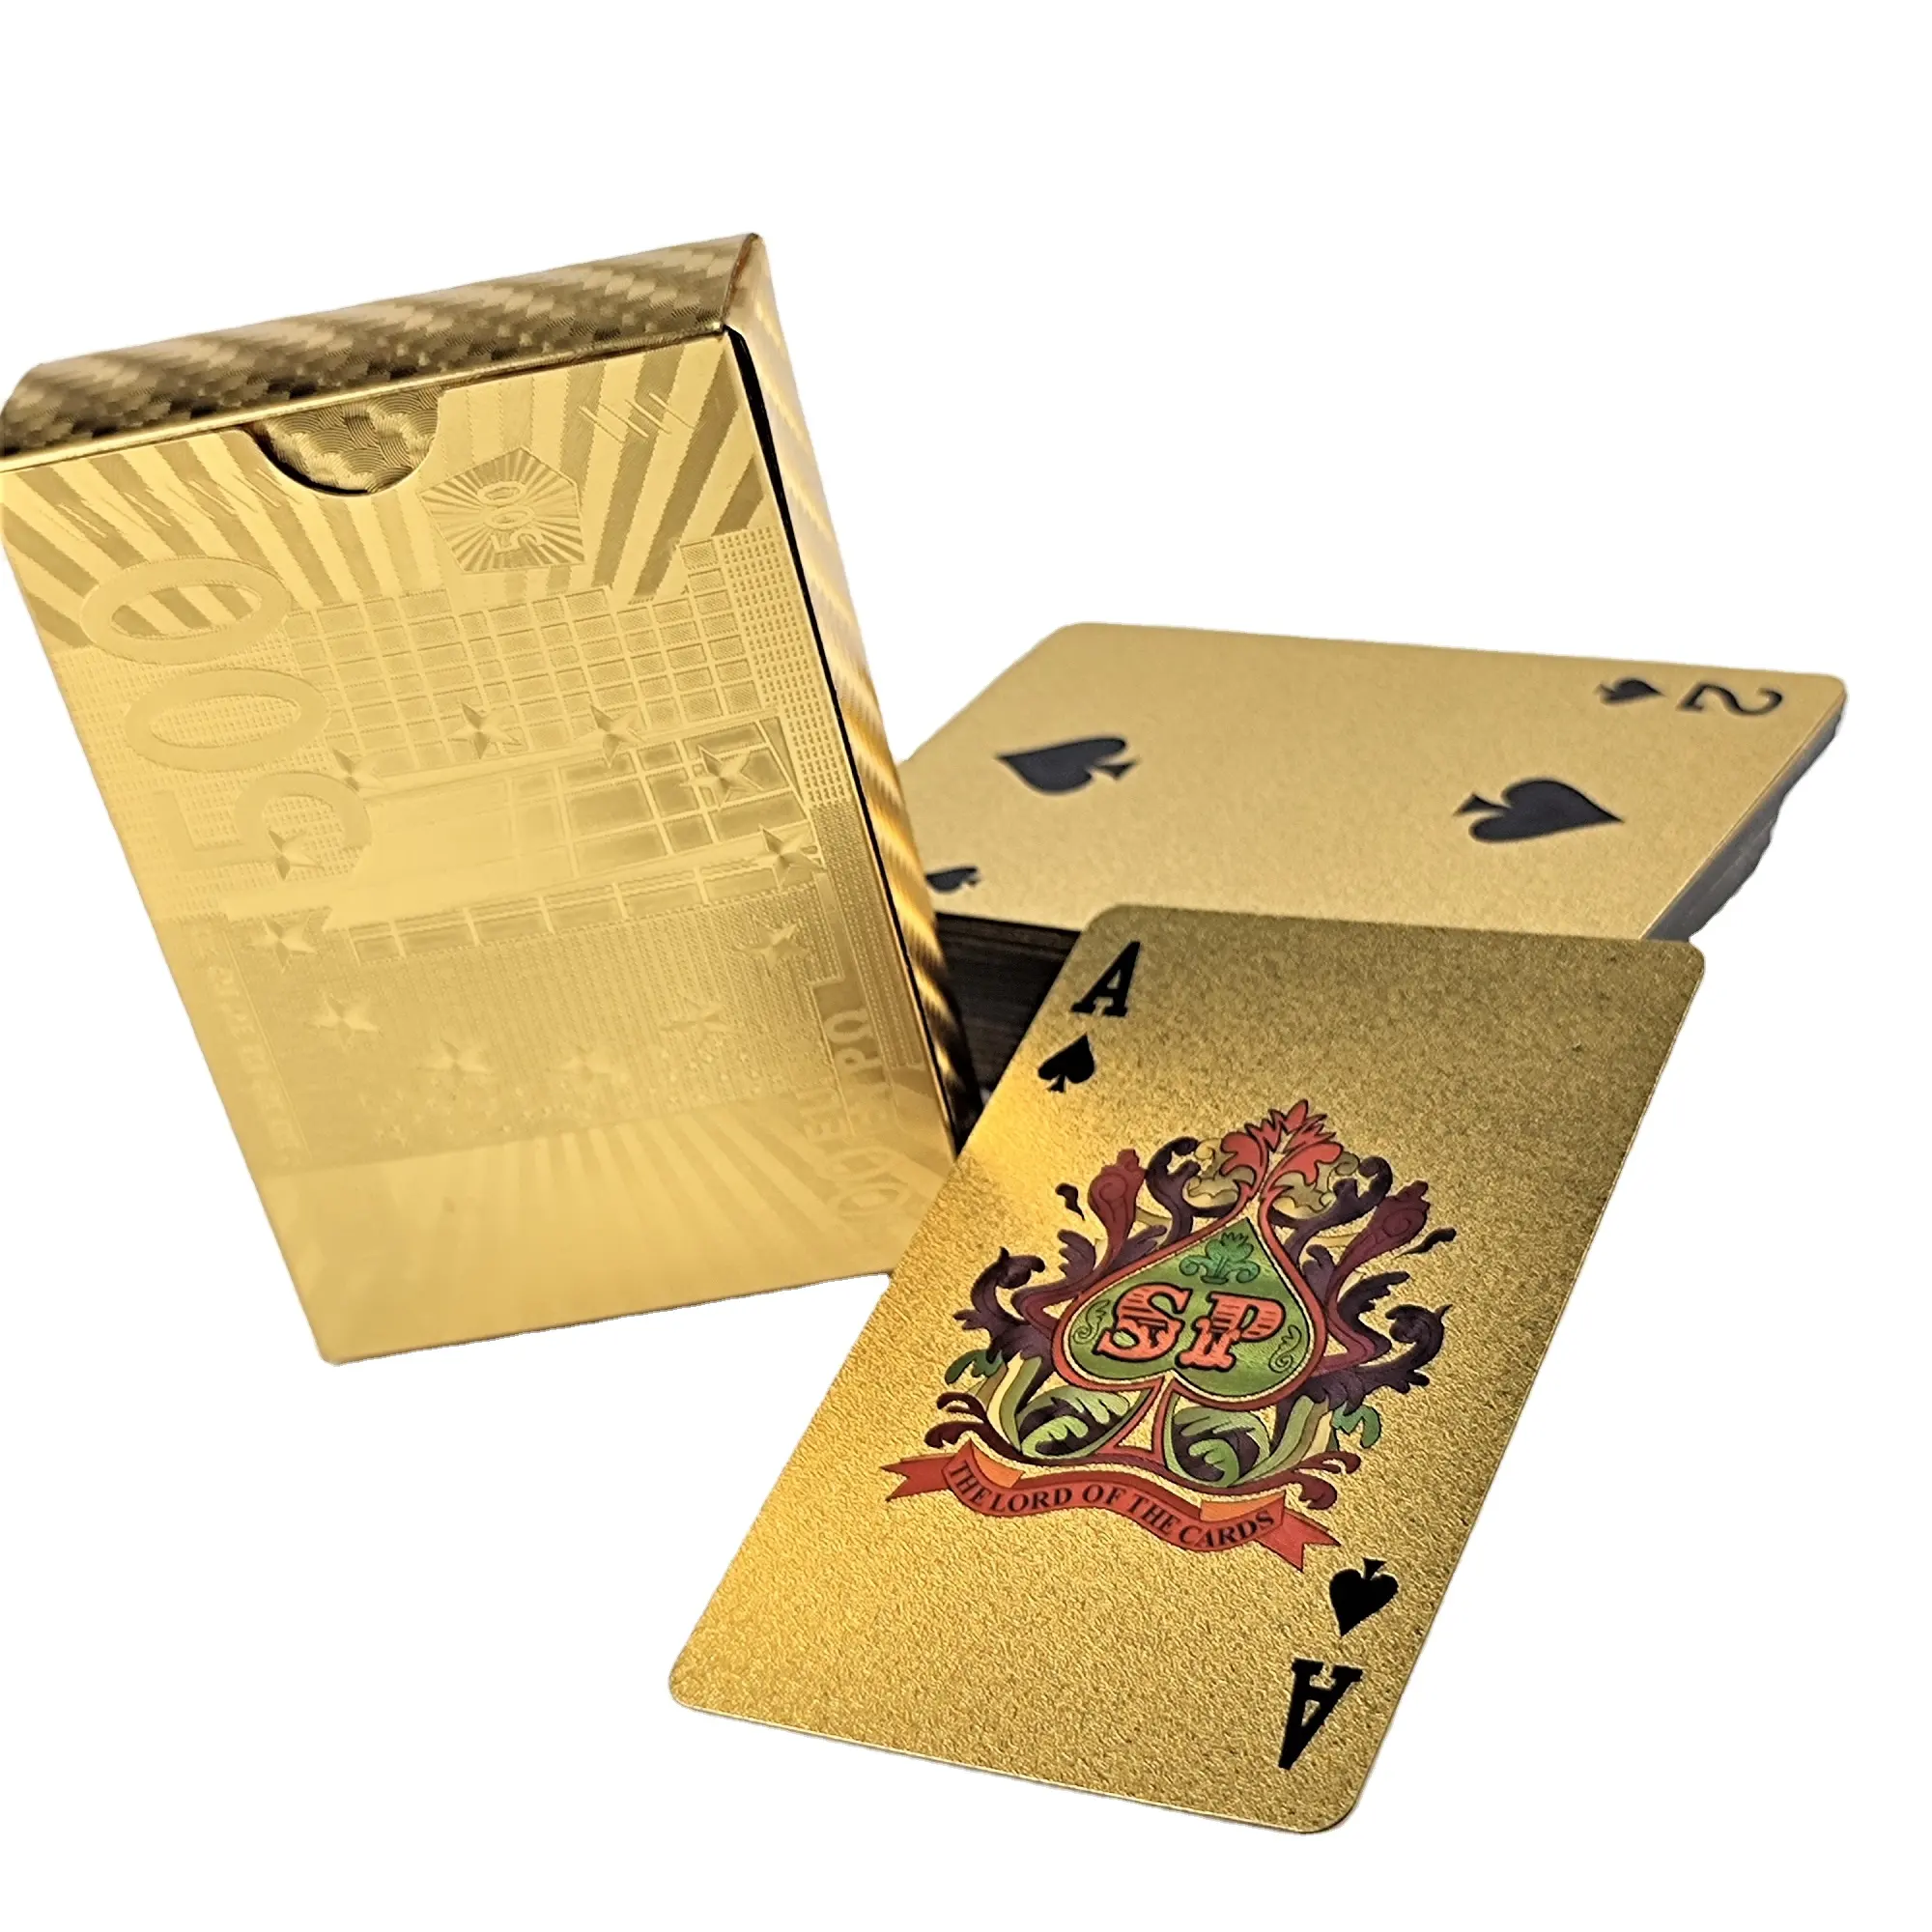 Juegos de cartas de Pvc de alta calidad, cartas de juego impermeables de plástico dorado